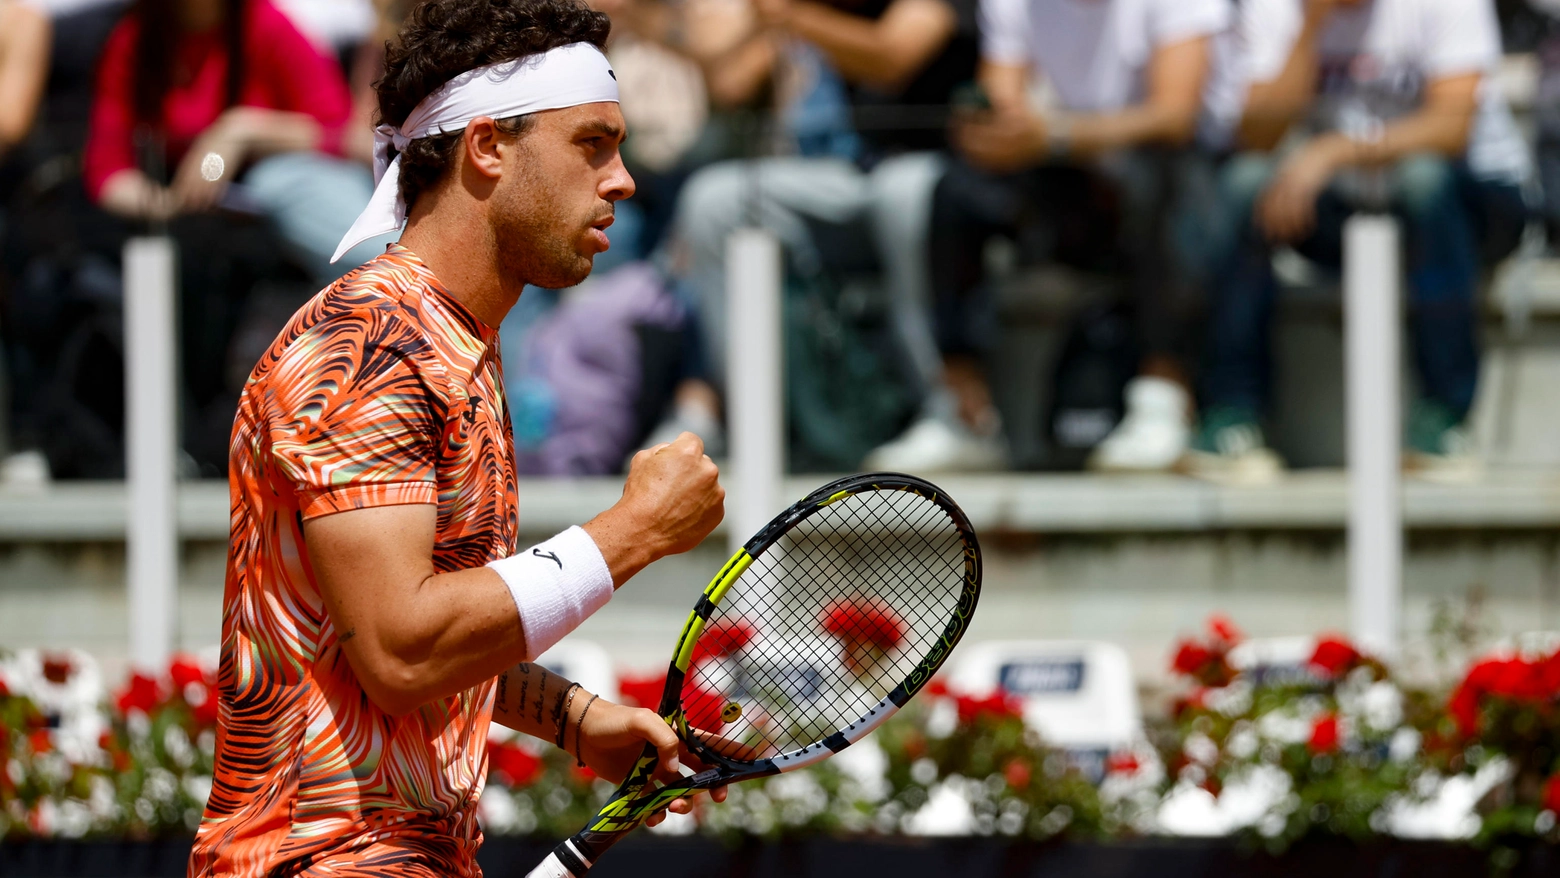 Marco Cecchinato, 30 anni, n. 83 Atp: è stato semifinalista al Roland Garros nel 2018